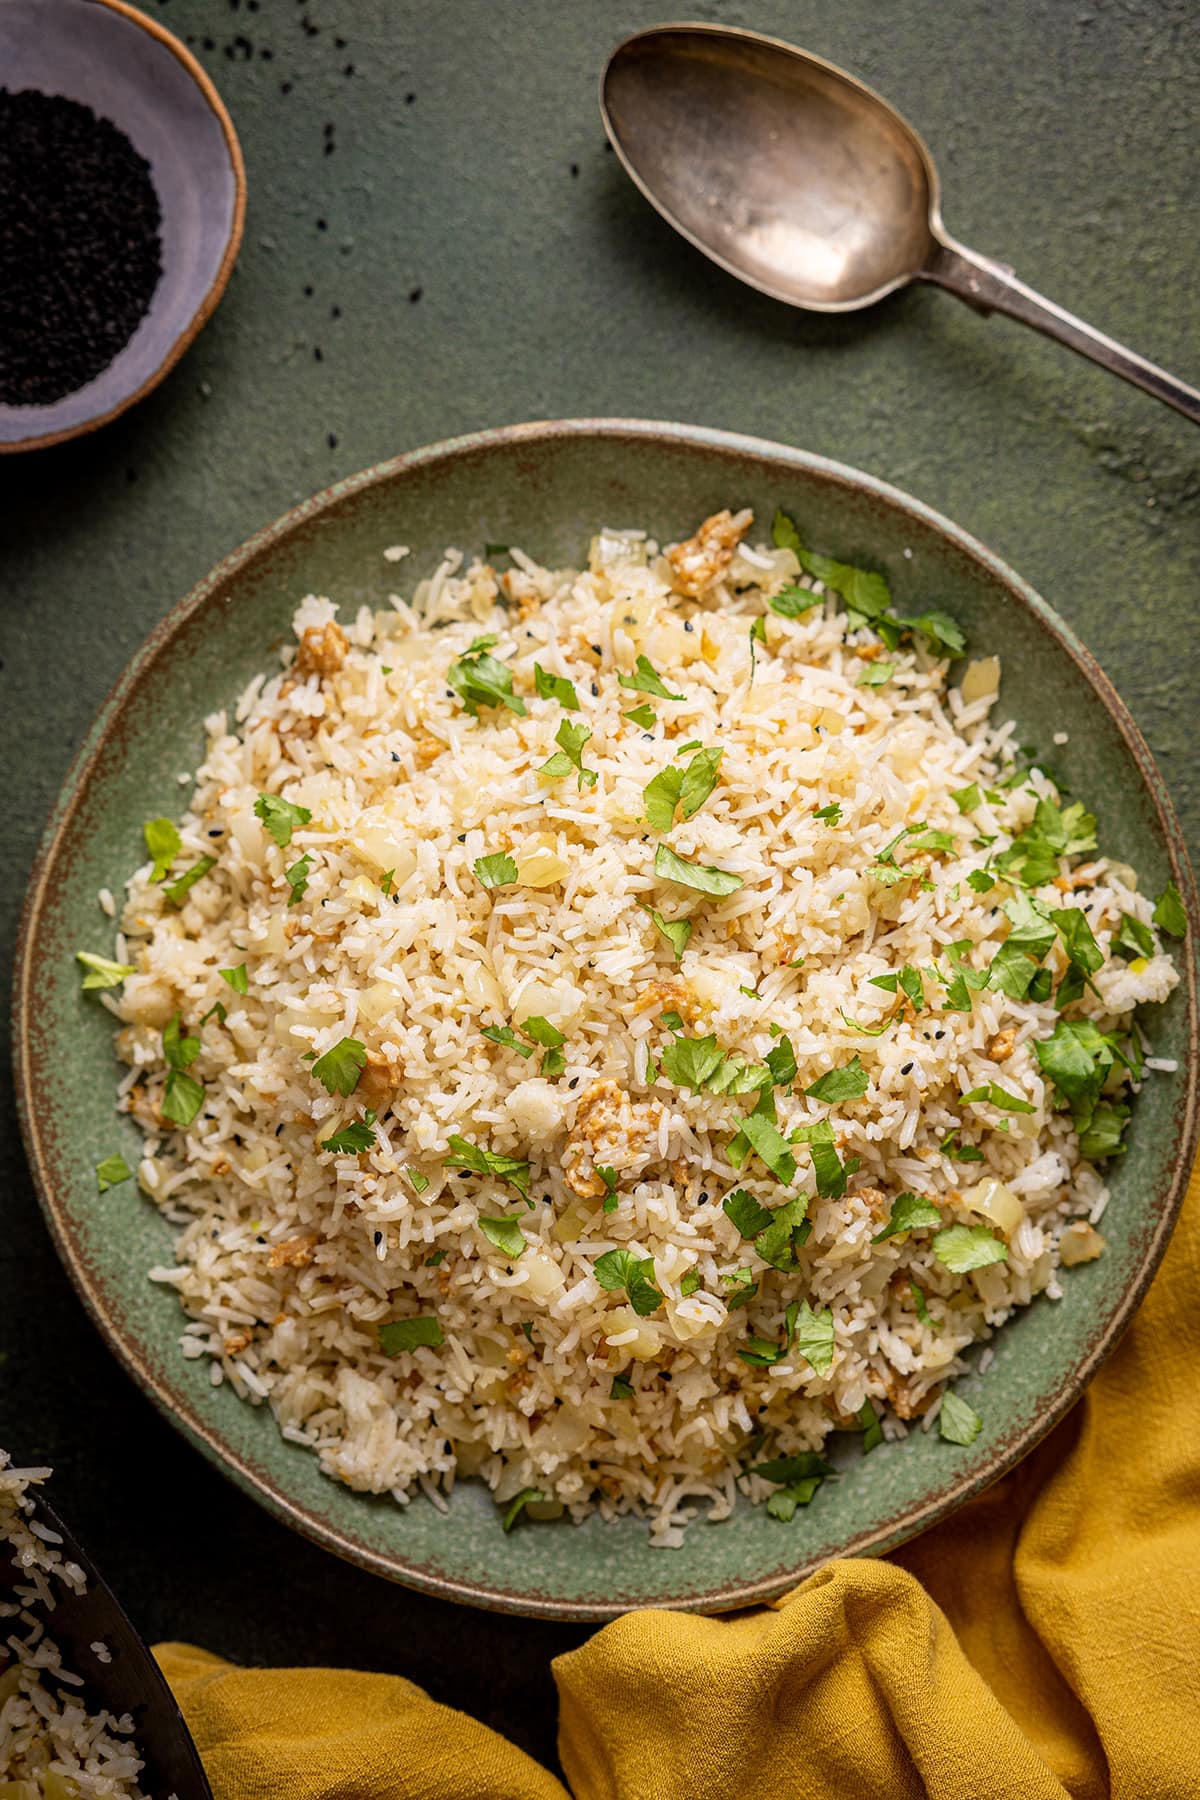 Gebratener Reis mit Zwiebeln auf einem grünen Teller, bestreut mit Koriander und einer Senfserviette in der unteren Ecke.